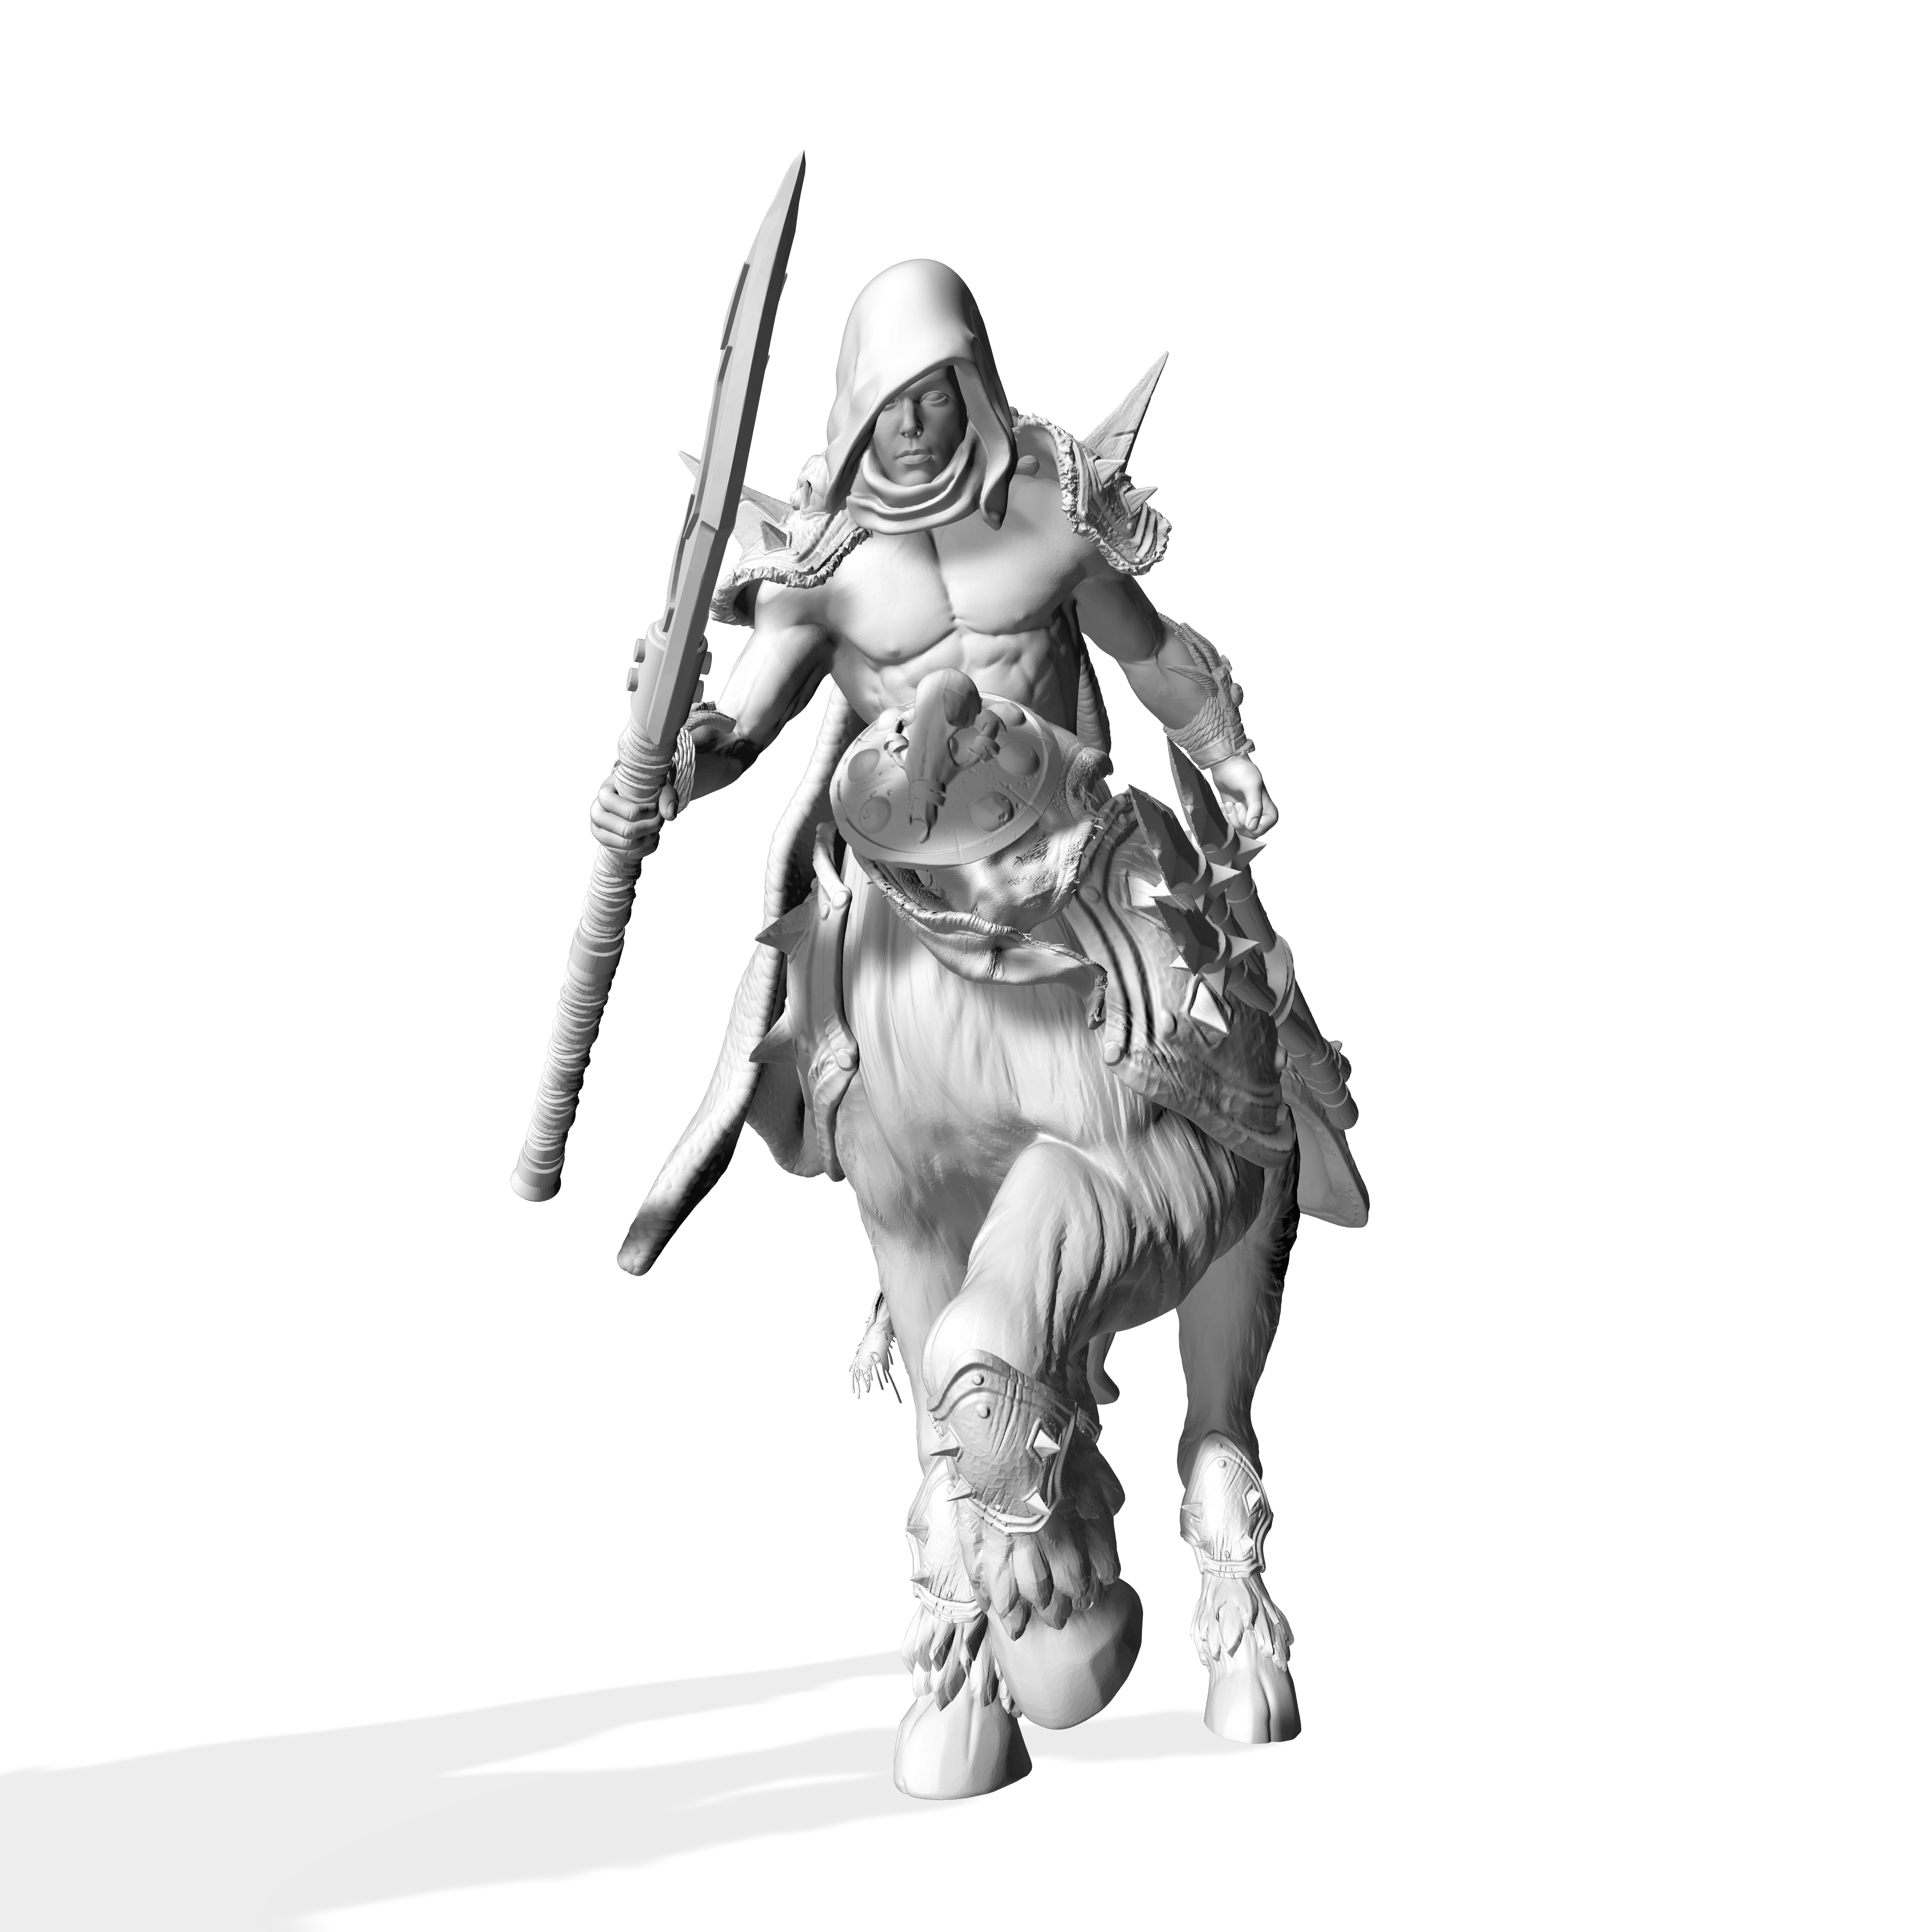 Male Centaur man warrior fantasy miniature figurine statue